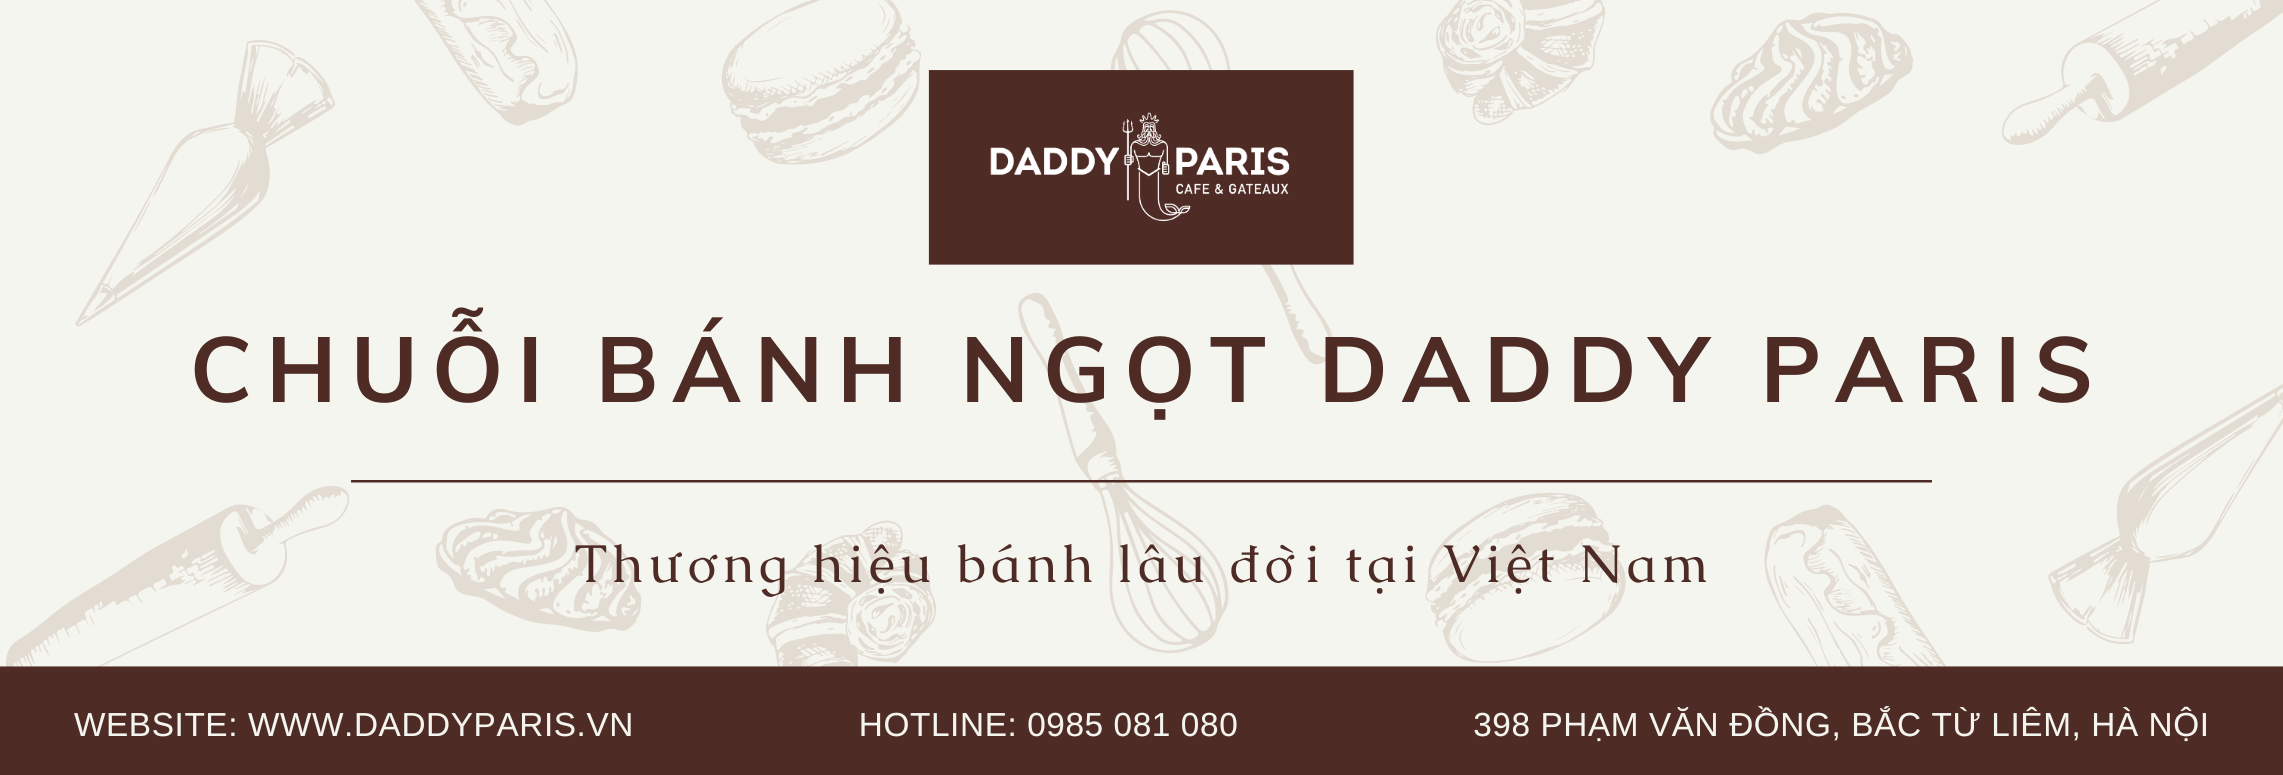 Thương Hiệu Bánh DADDY PARIS